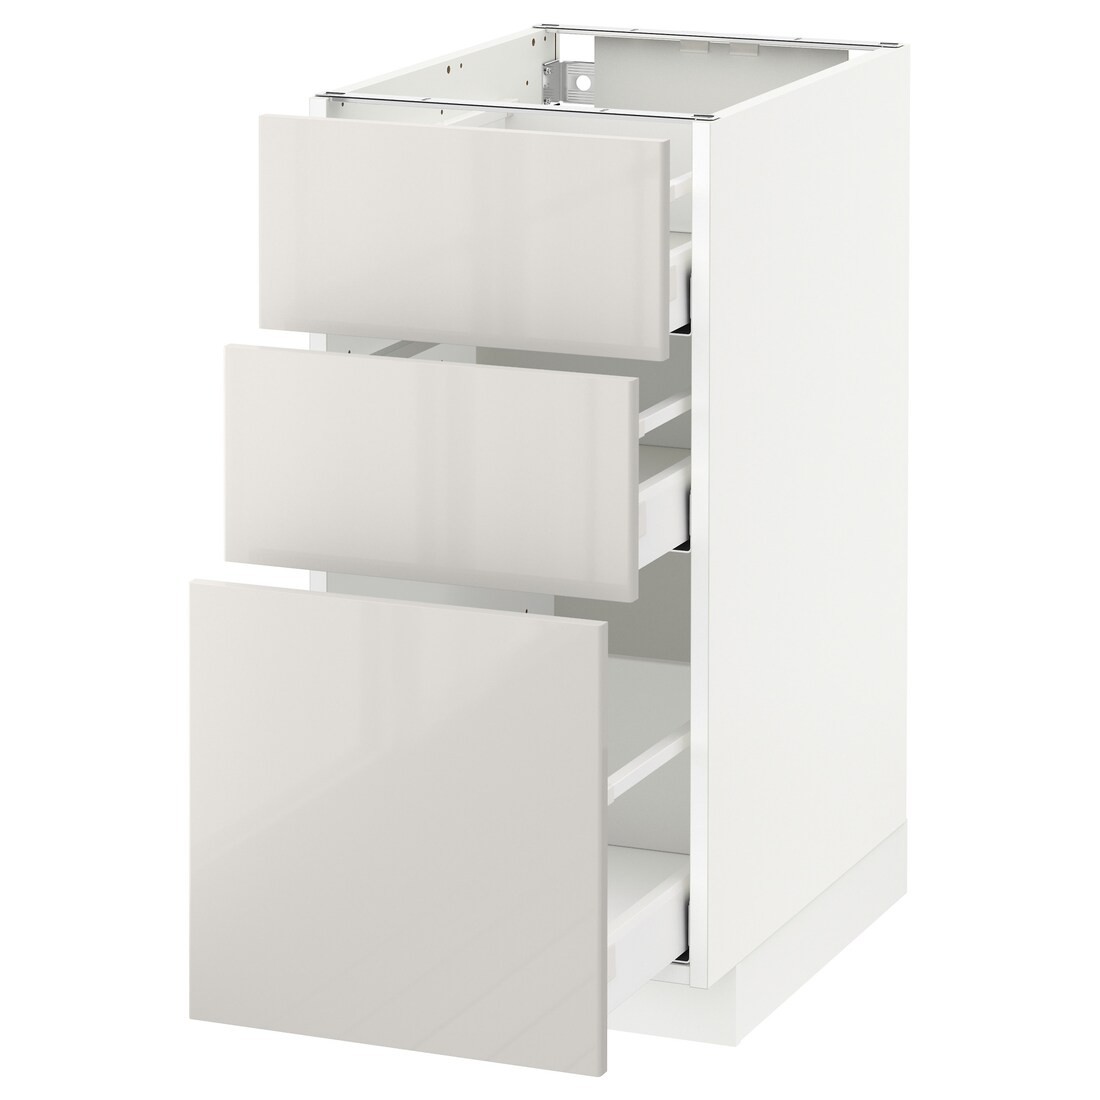 IKEA METOD МЕТОД / MAXIMERA МАКСИМЕРА Напольный шкаф с 3 ящиками, белый / Ringhult светло-серый, 40x60 см 69142498 691.424.98